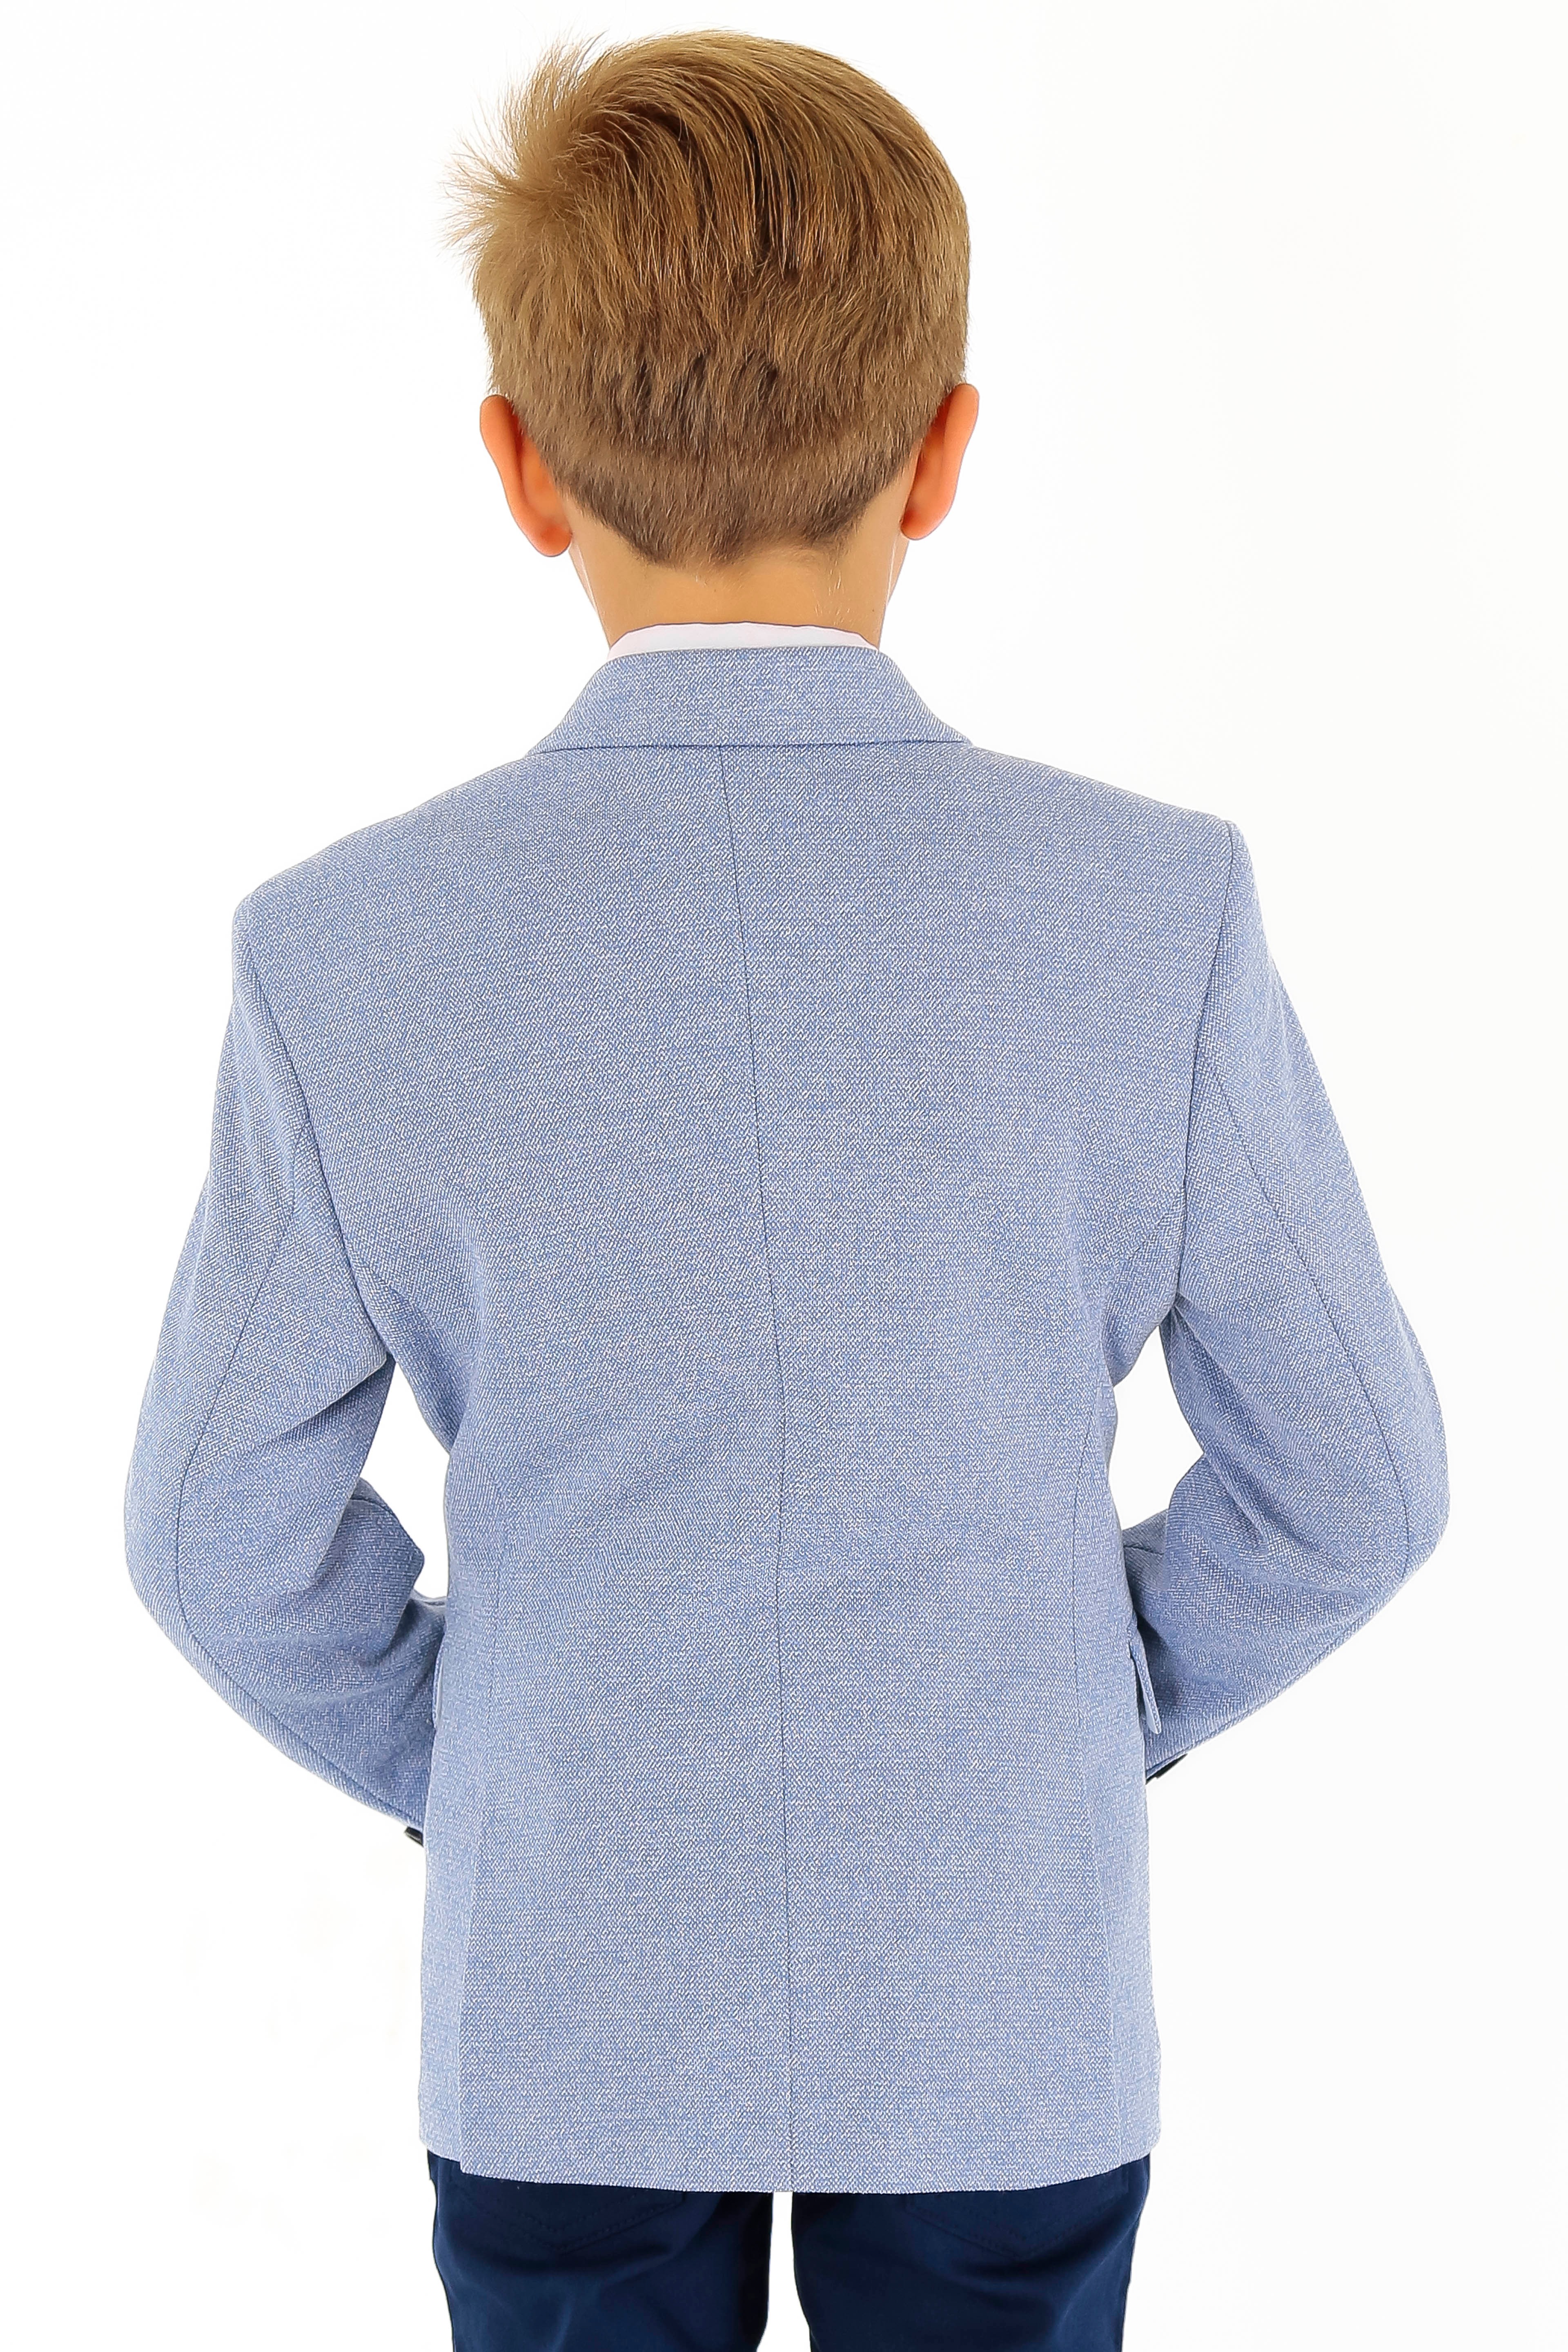 Erkek Çocuk 2 Parça Ceket Yelek Takım - Mavi